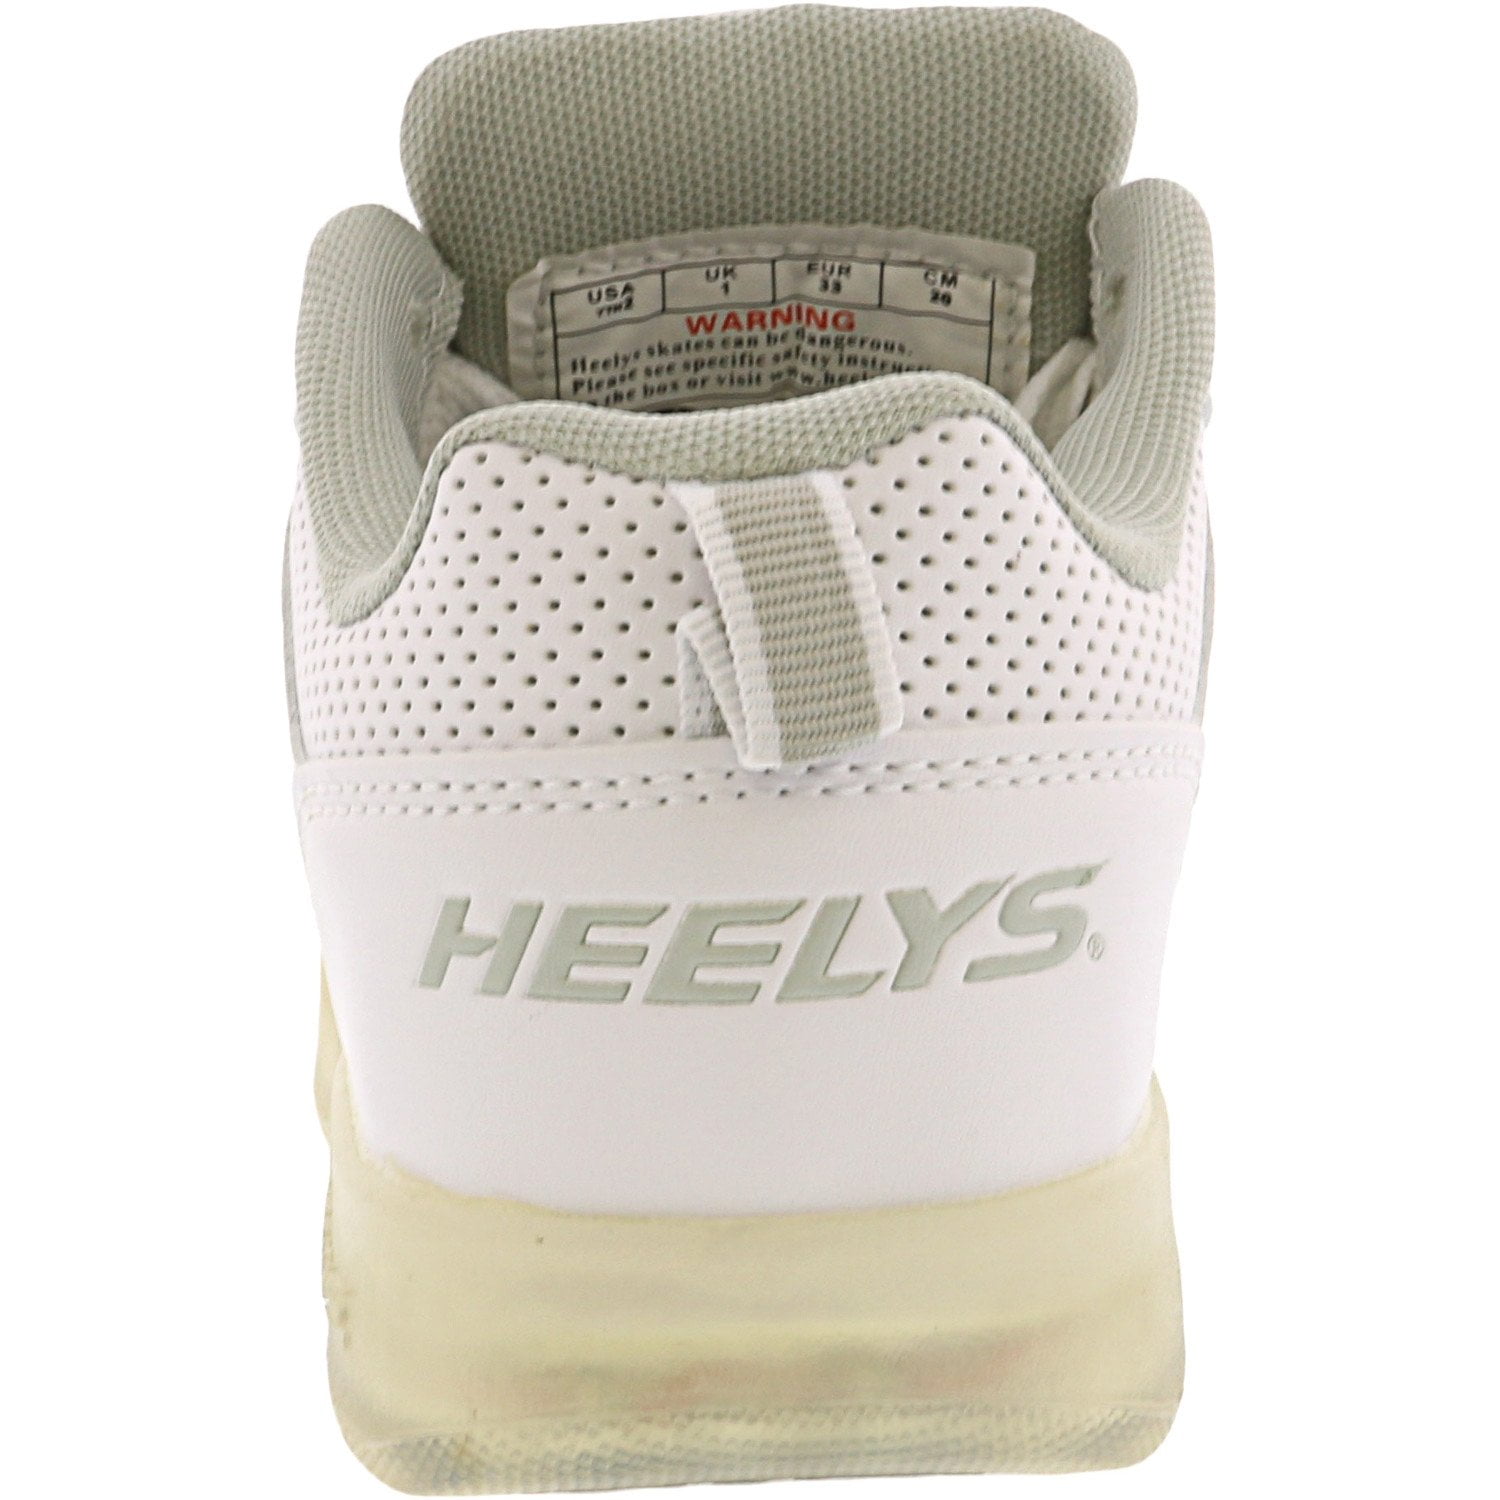 heelys premium 1 lo white